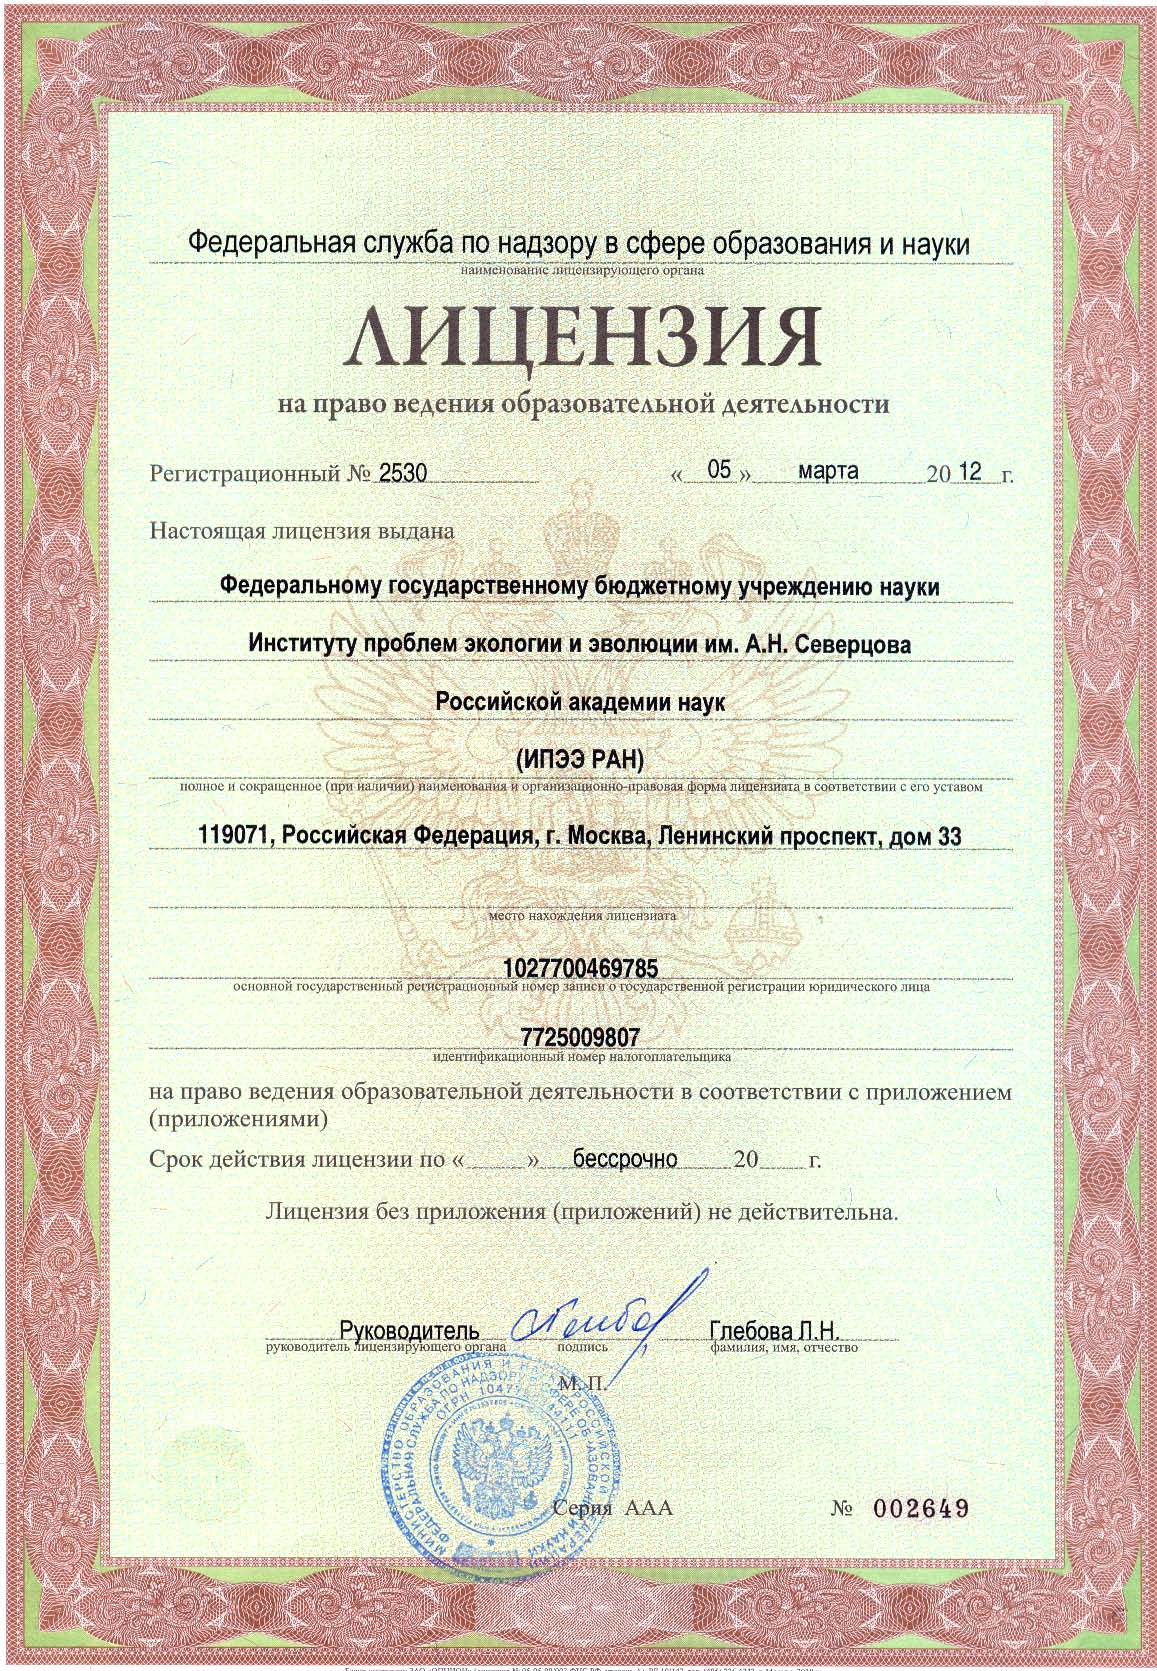 Лицензия на право ведения образовательной деятельности № 2530 от 5.03.2012 г.